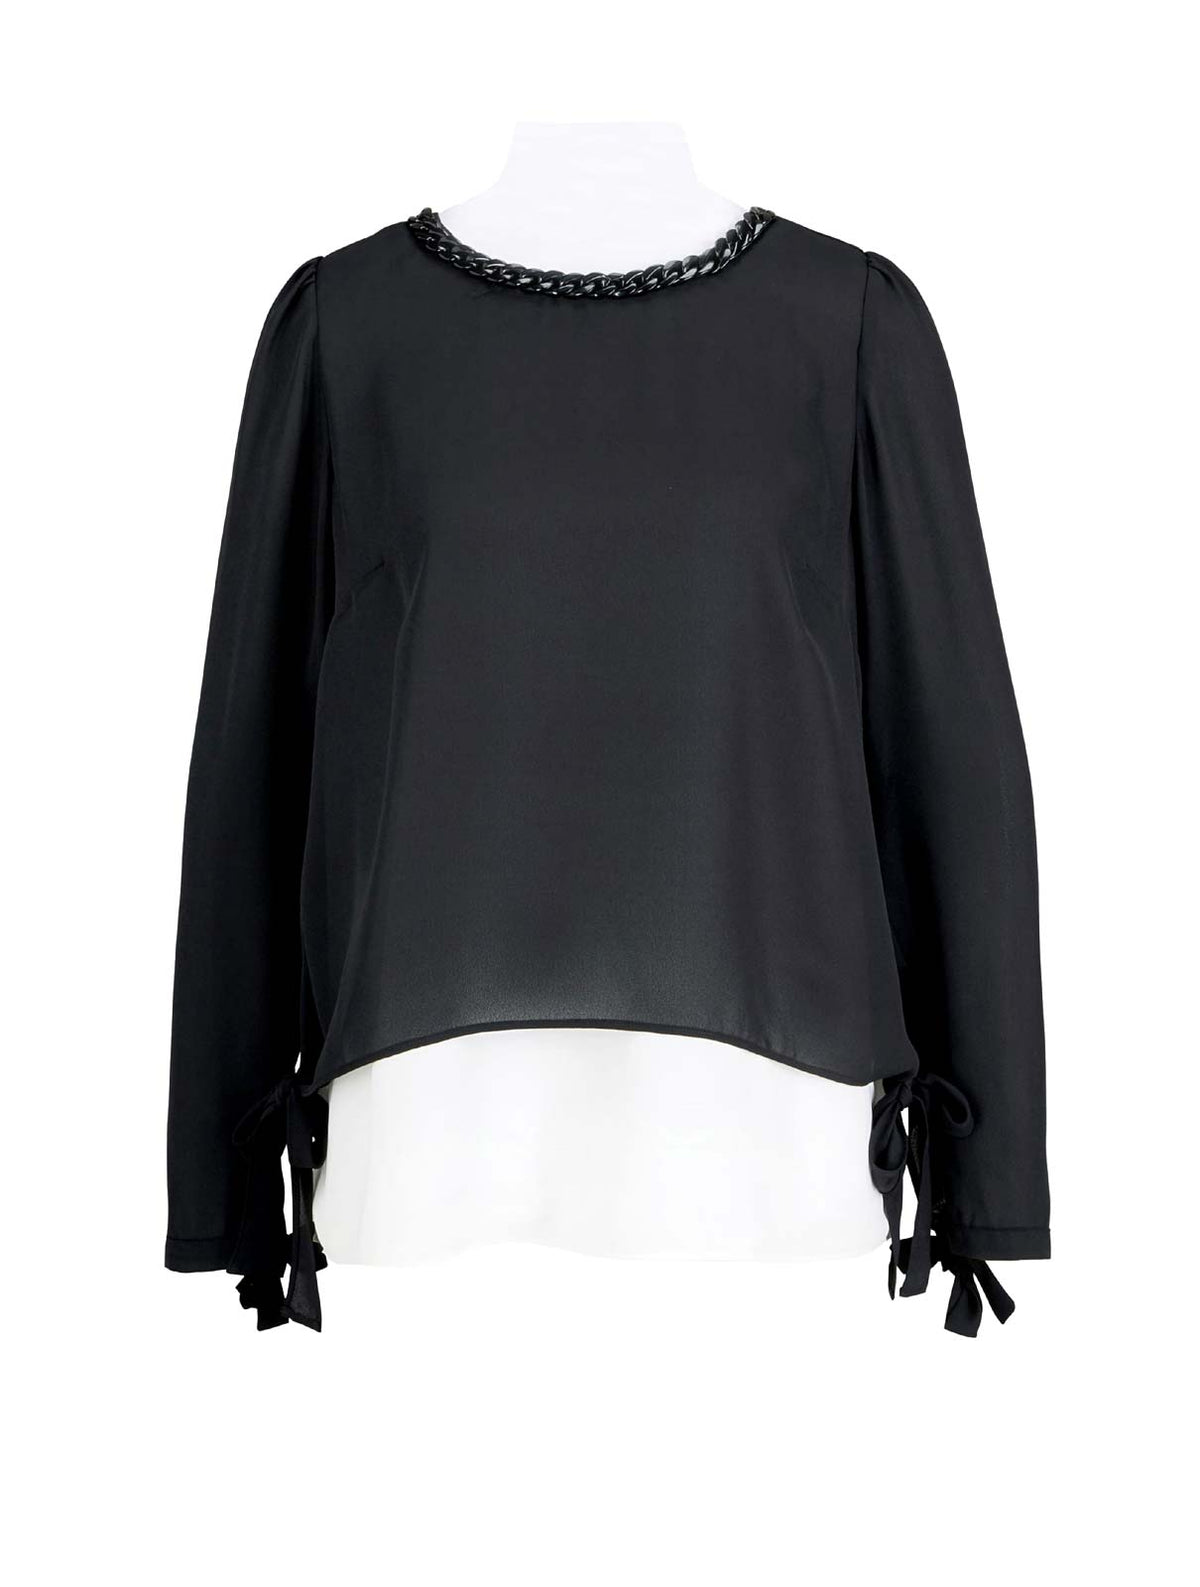 ASHLEY BROOKE Damen 2-in-1-Bluse mit Schmuckkette, schwarz-weiß